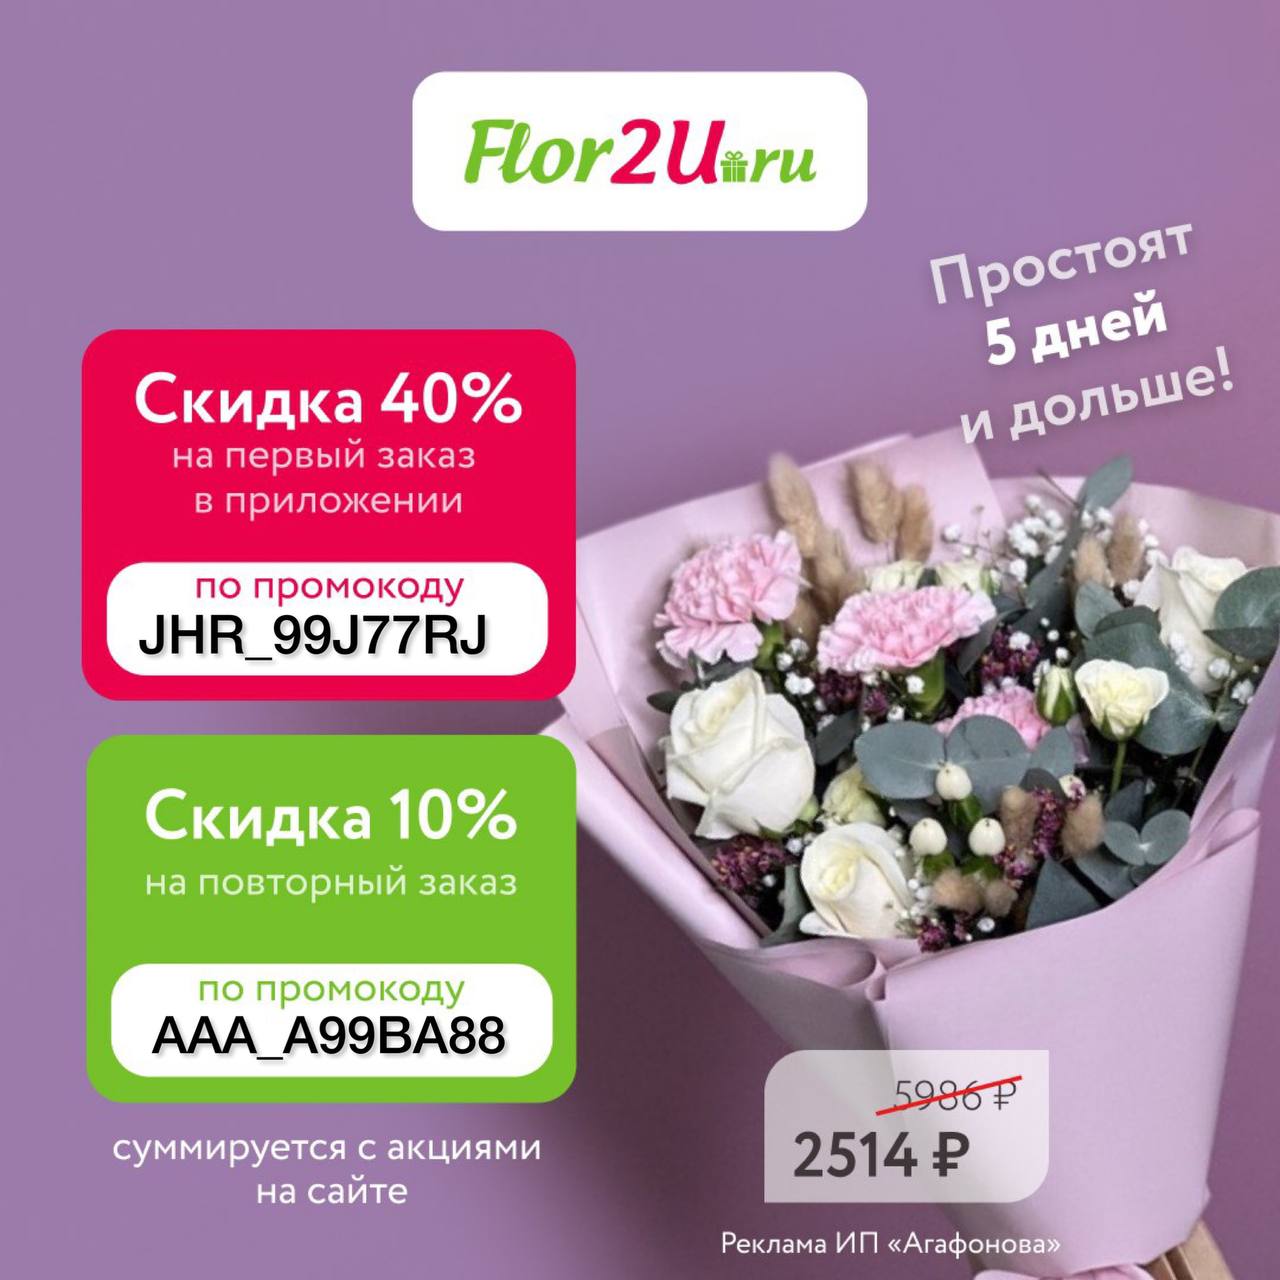 Flor2u ru доставка спб. Промокоды flor2u. Цветы flor2u. Промокоды на доставку цветов flor2u. Flor2u отзывы.